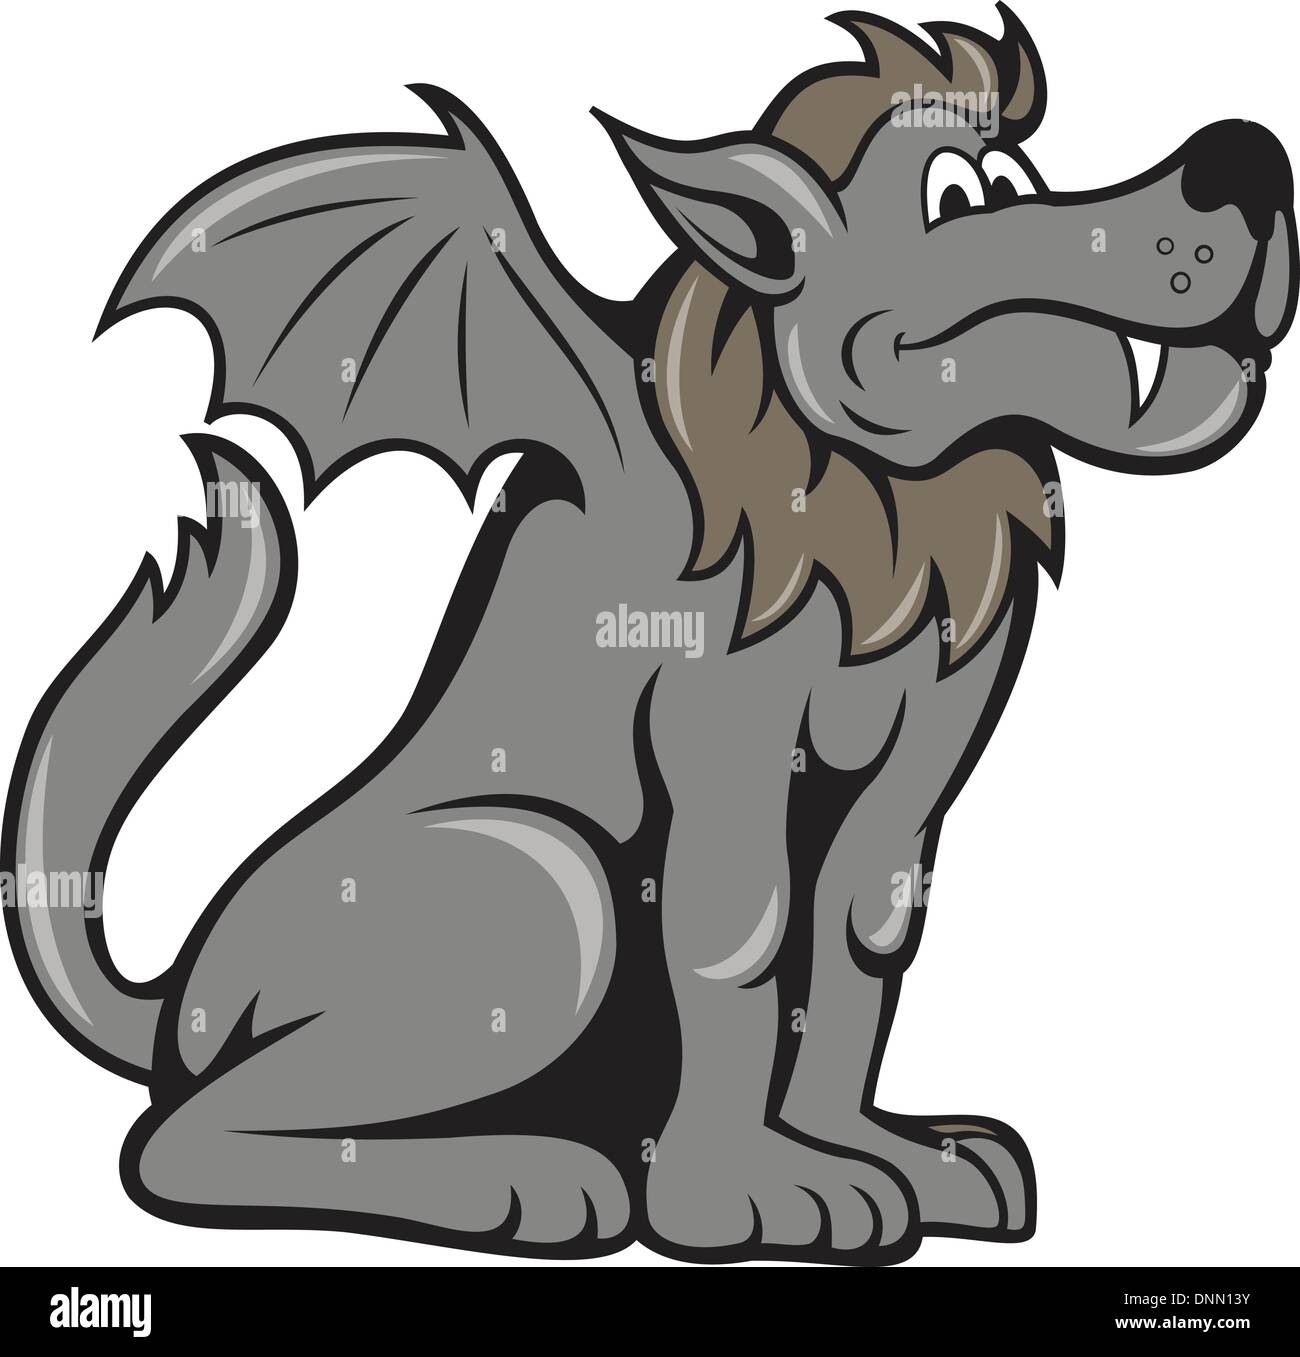 Illustration d'un monstre mythique kludde belge qui est un chien sauvage loup avec des ailes d'une chauve-souris fait en style cartoon. Illustration de Vecteur